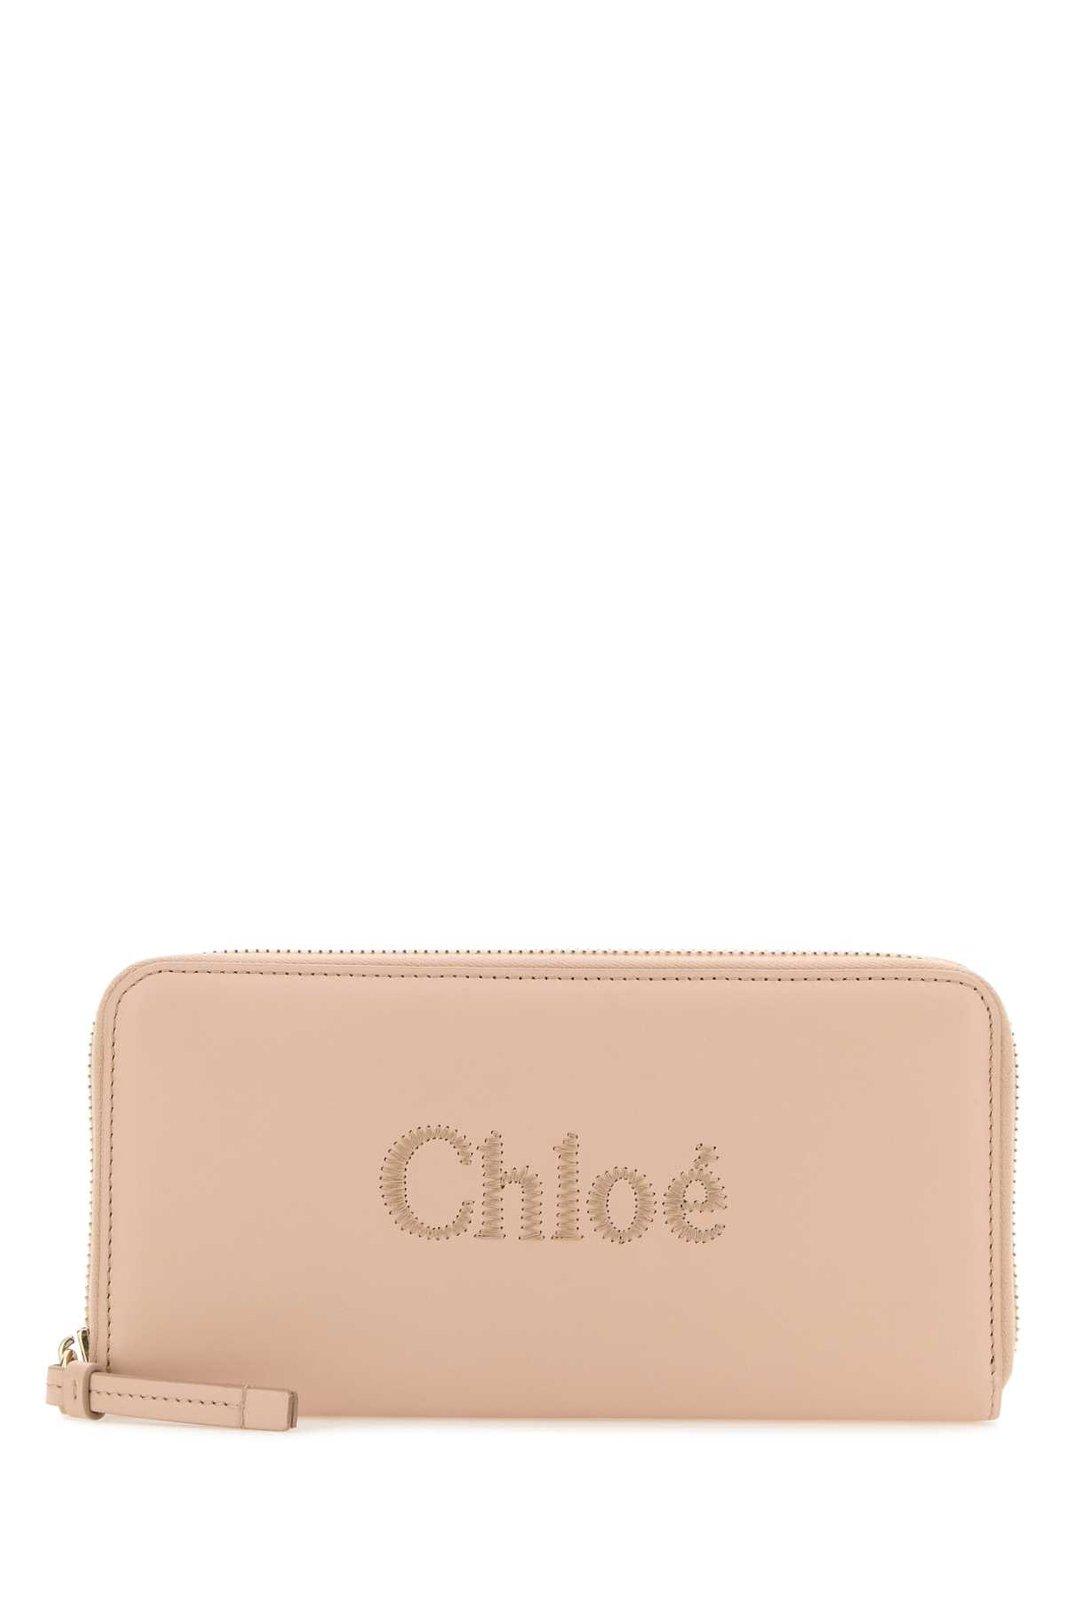 Chloé Sense Zipped Long Wallet